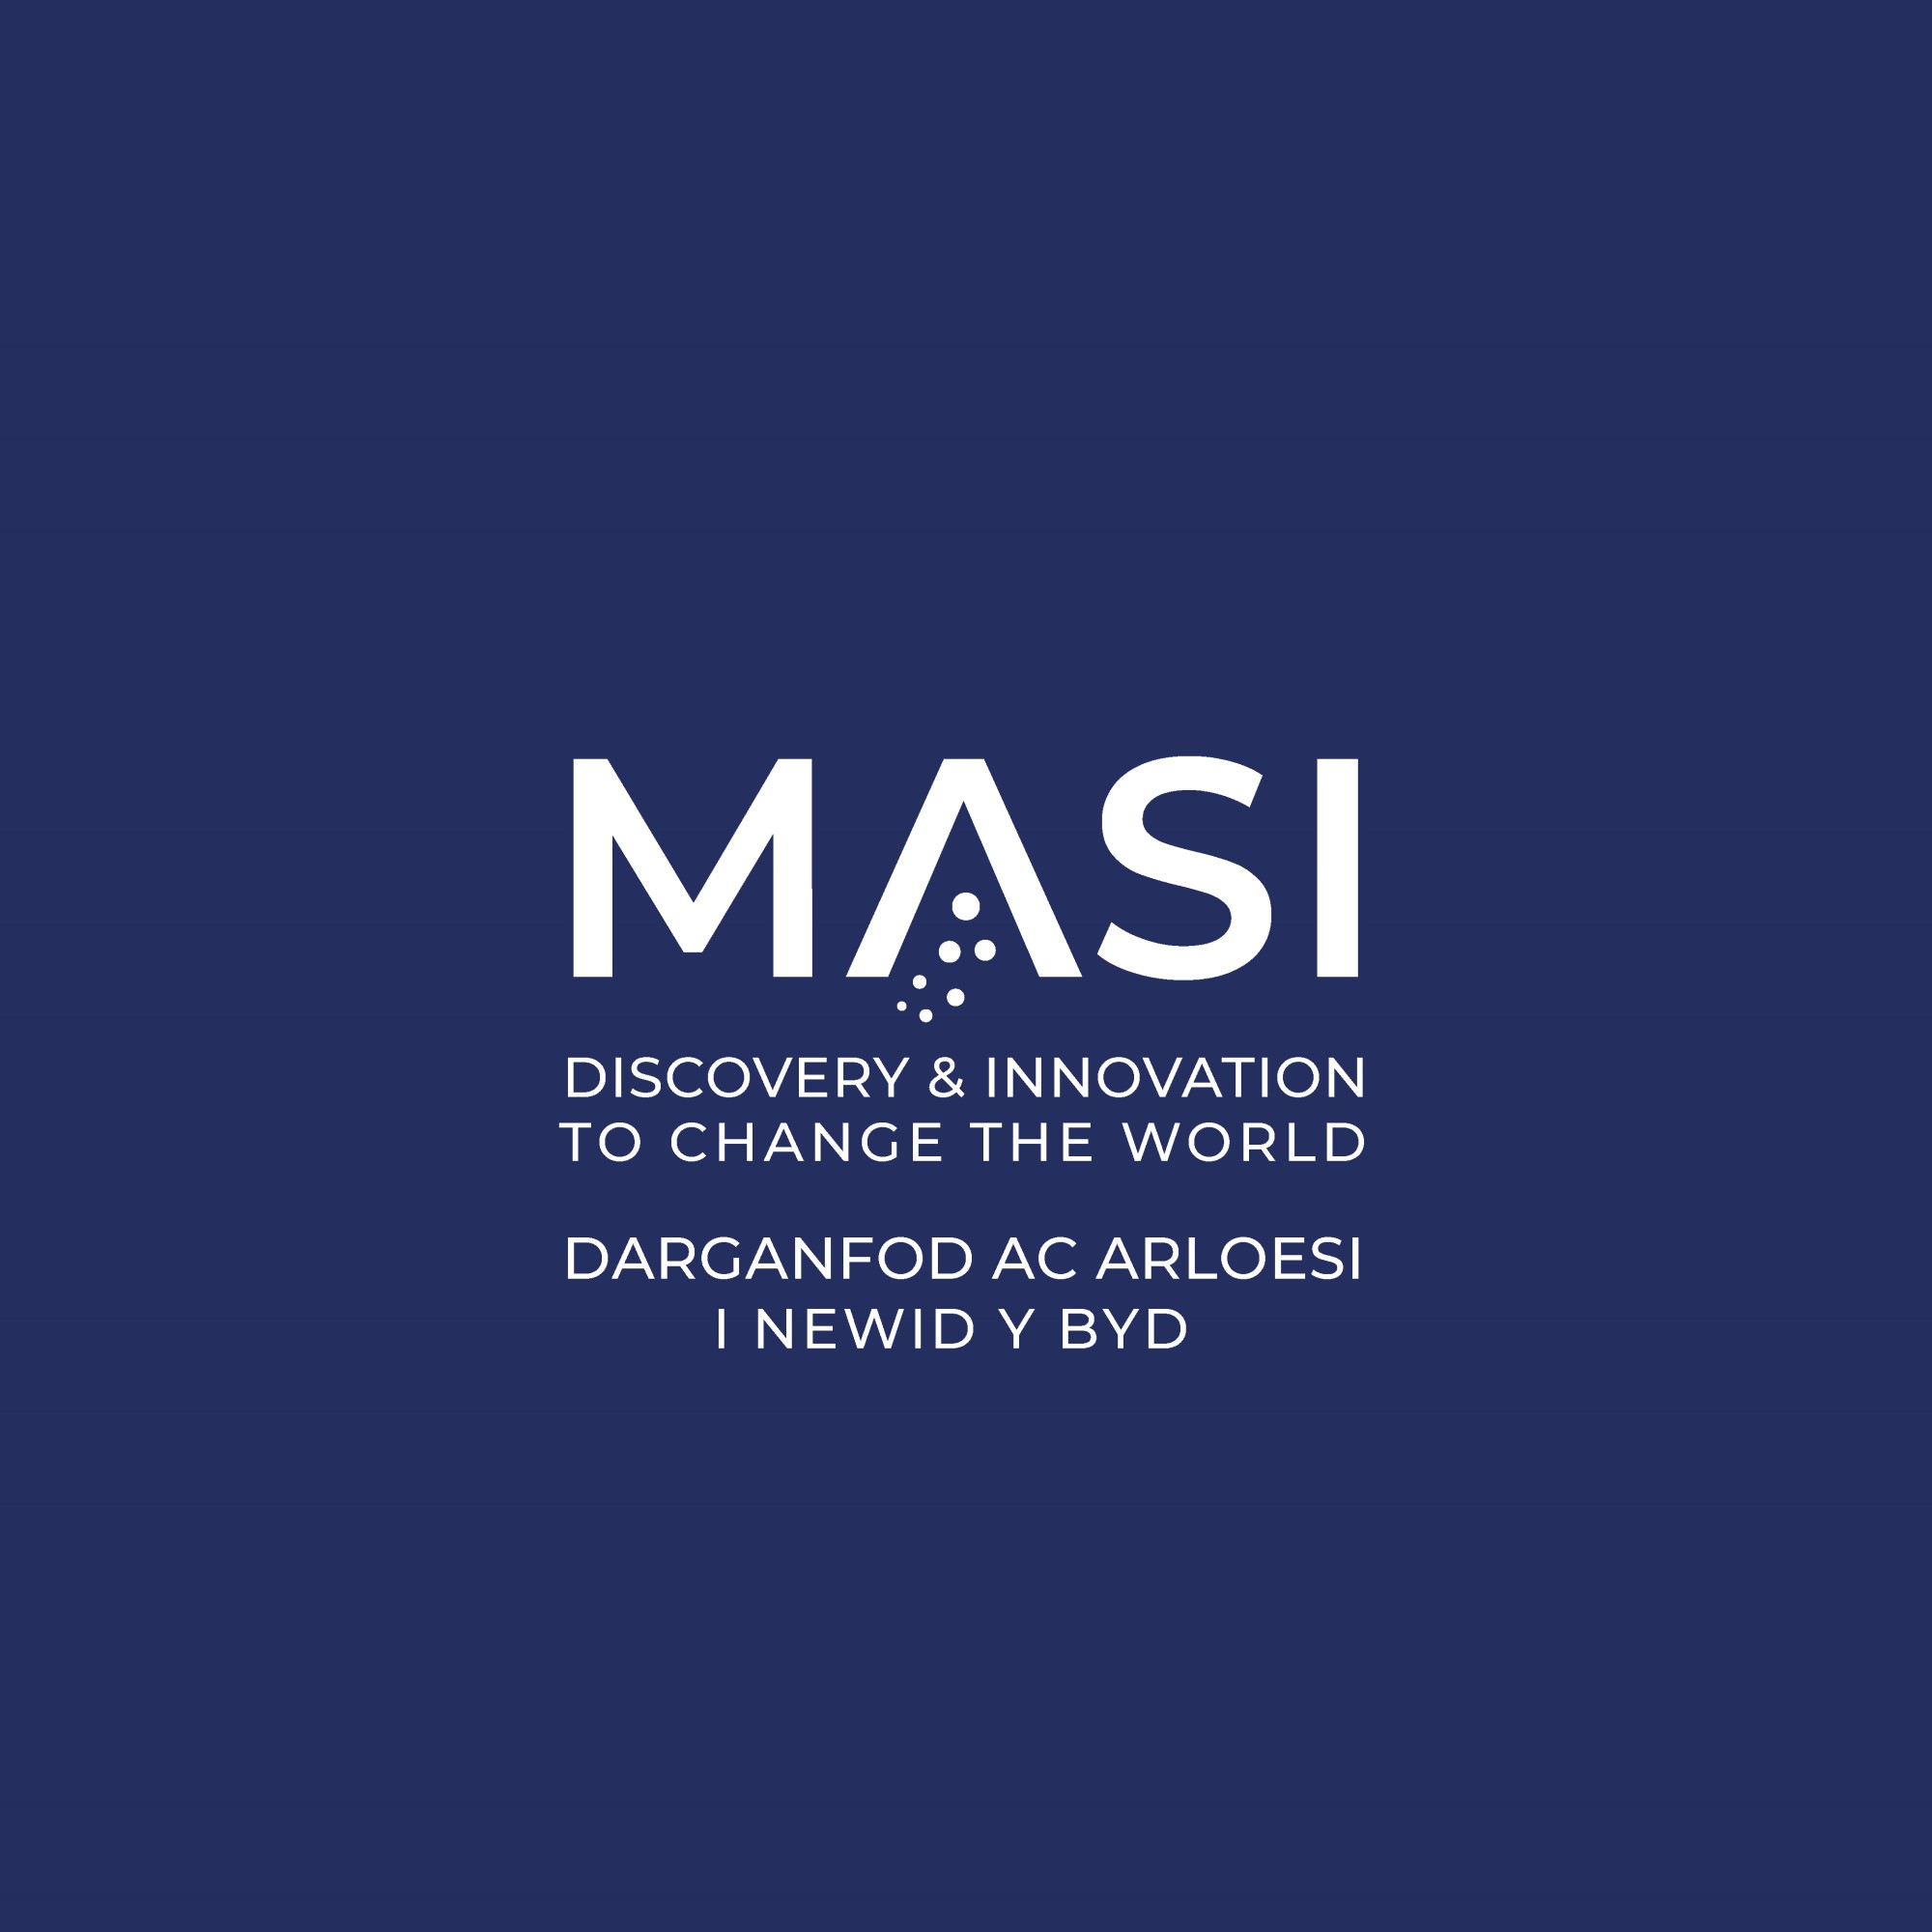 Morgan Advanced Studies Institute – MASI logo